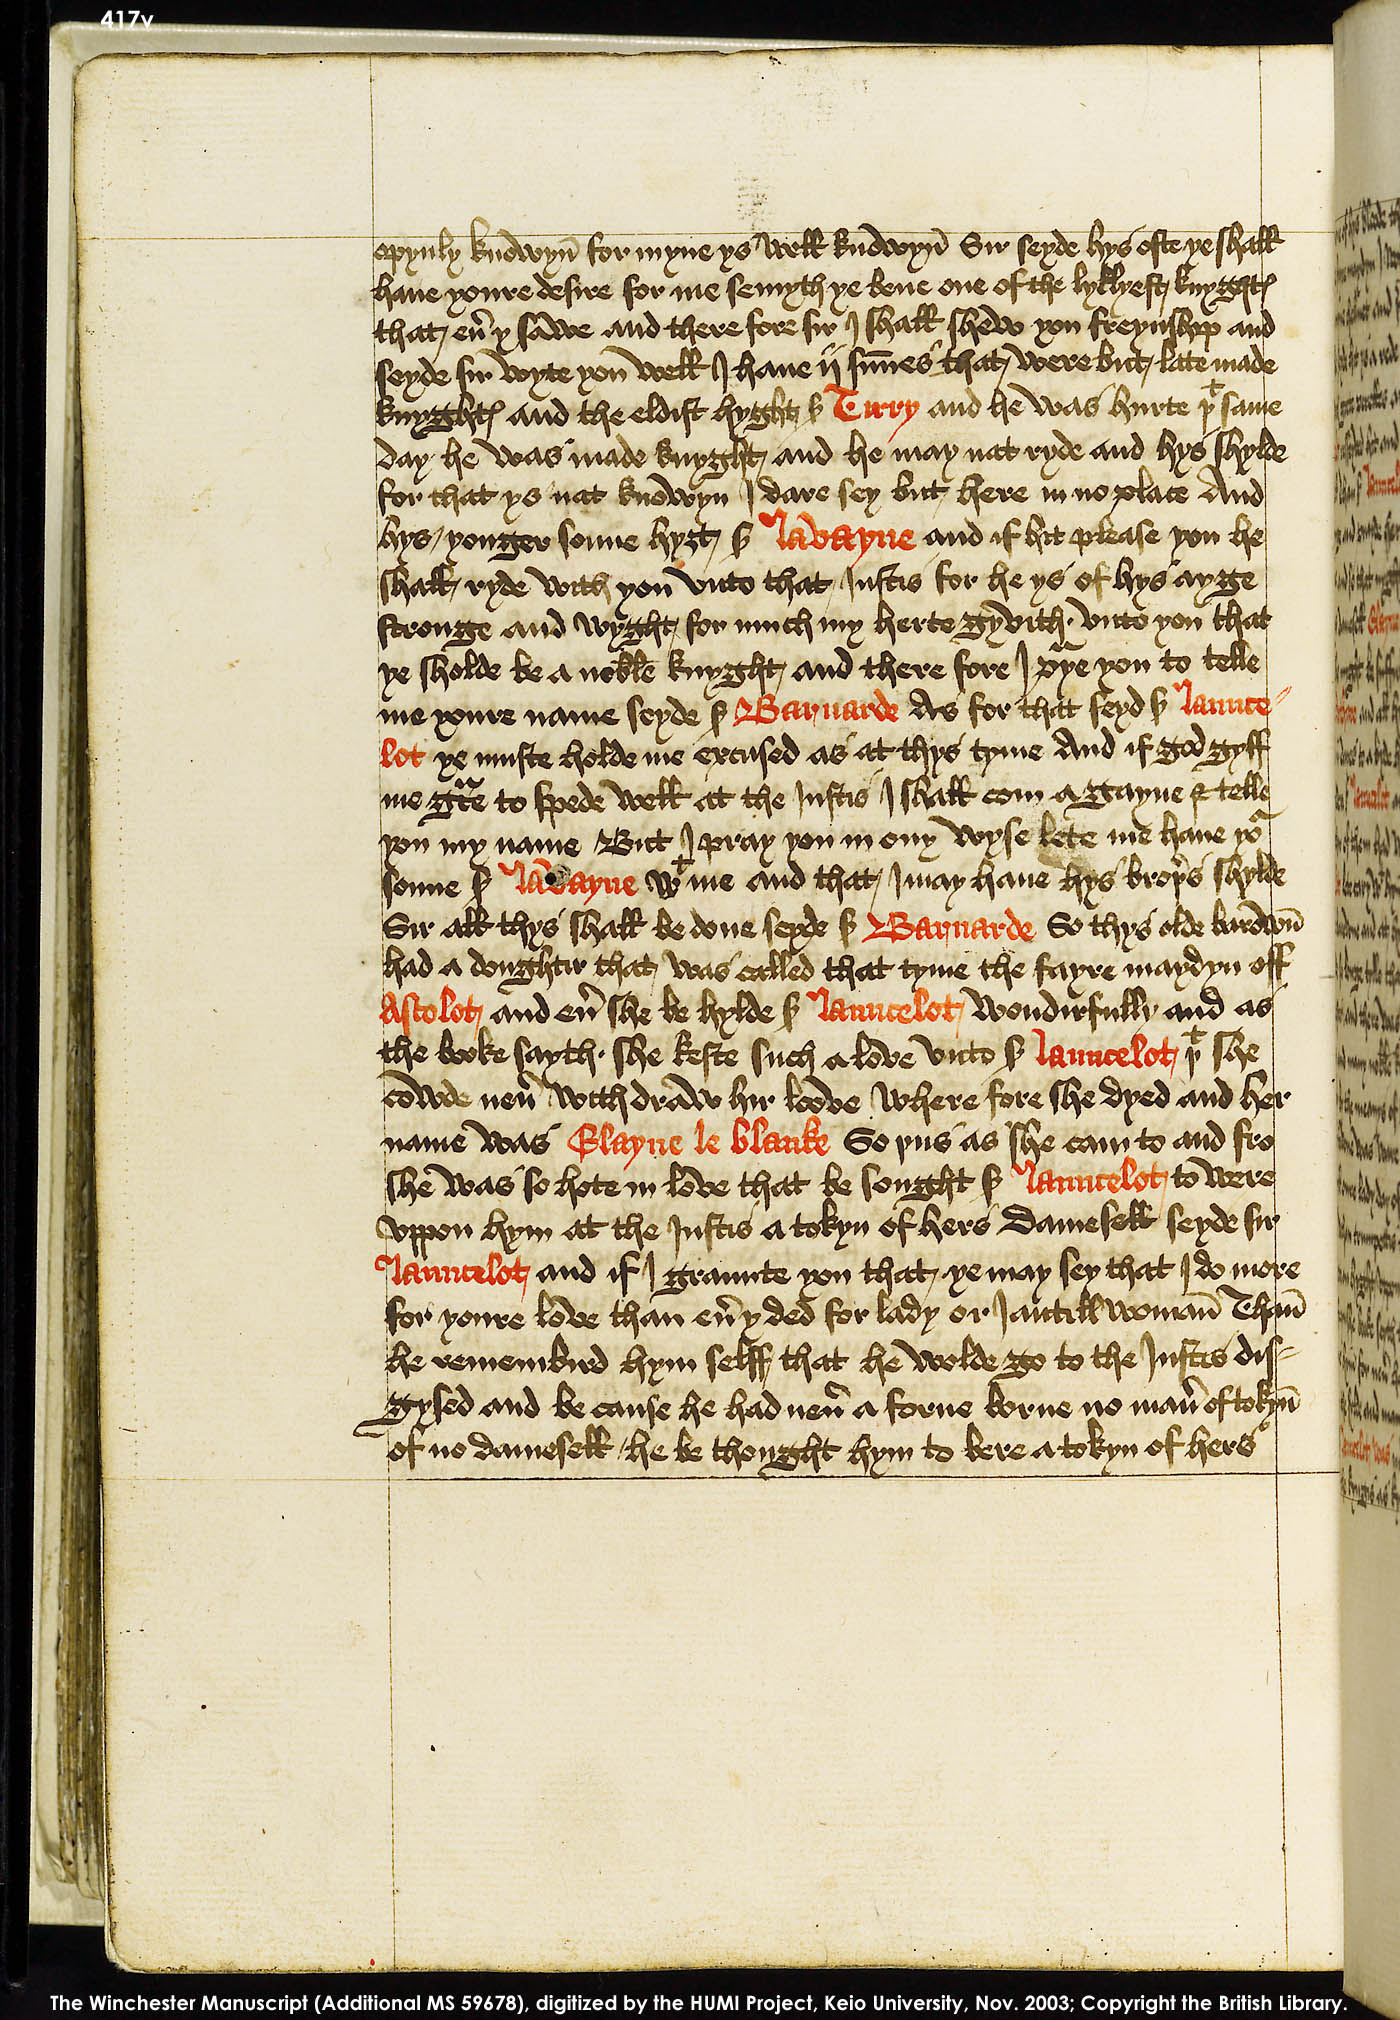 Folio 417v